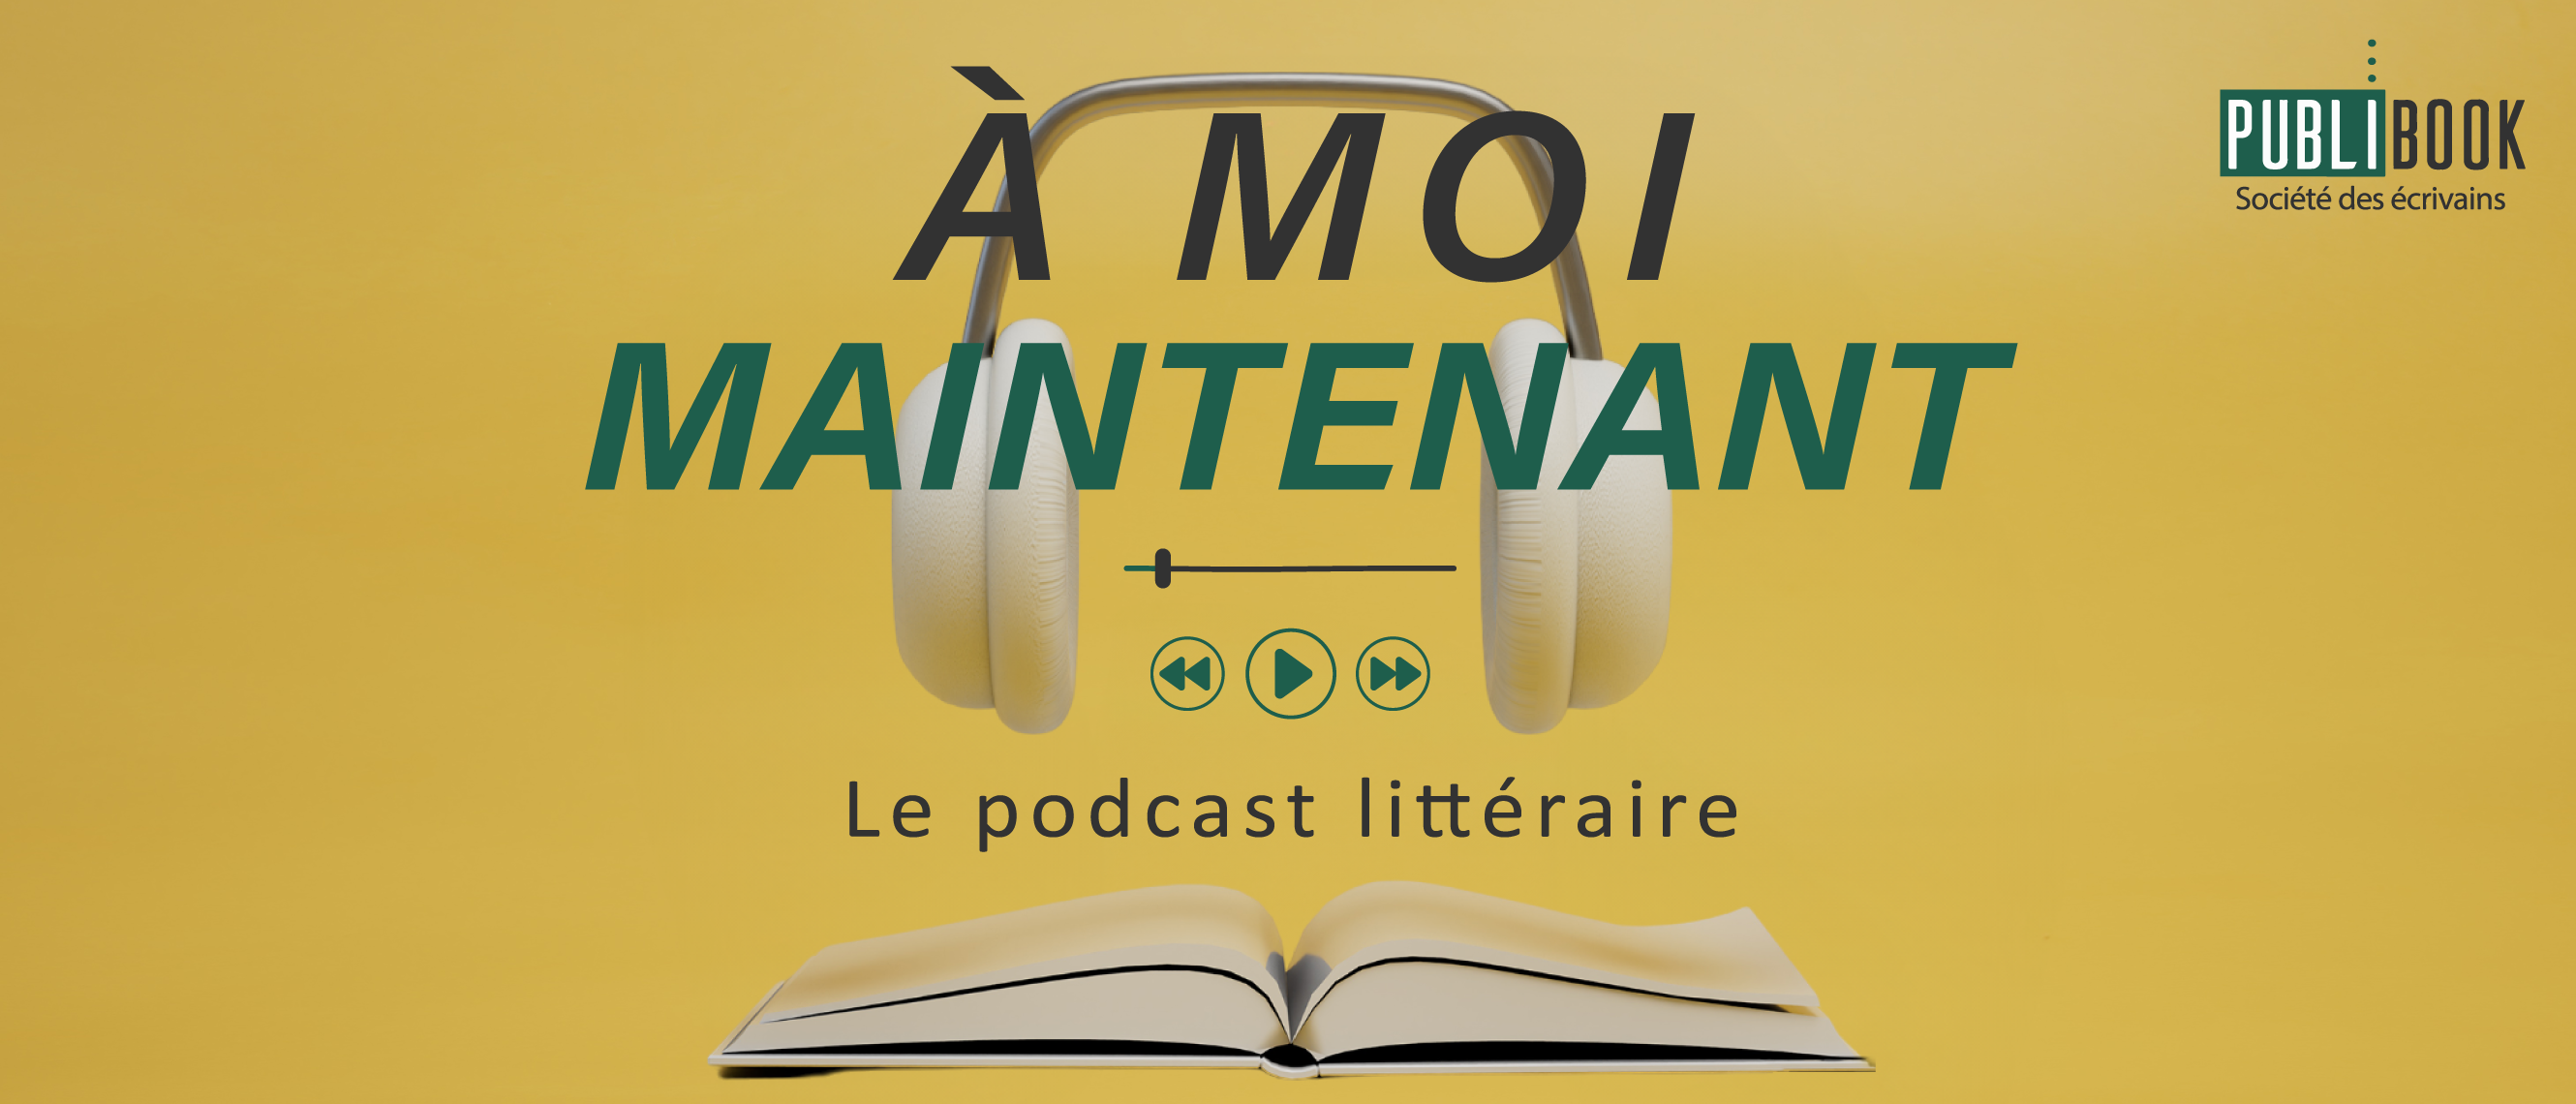 À moi maintenant – Le podcast littéraire Publibook